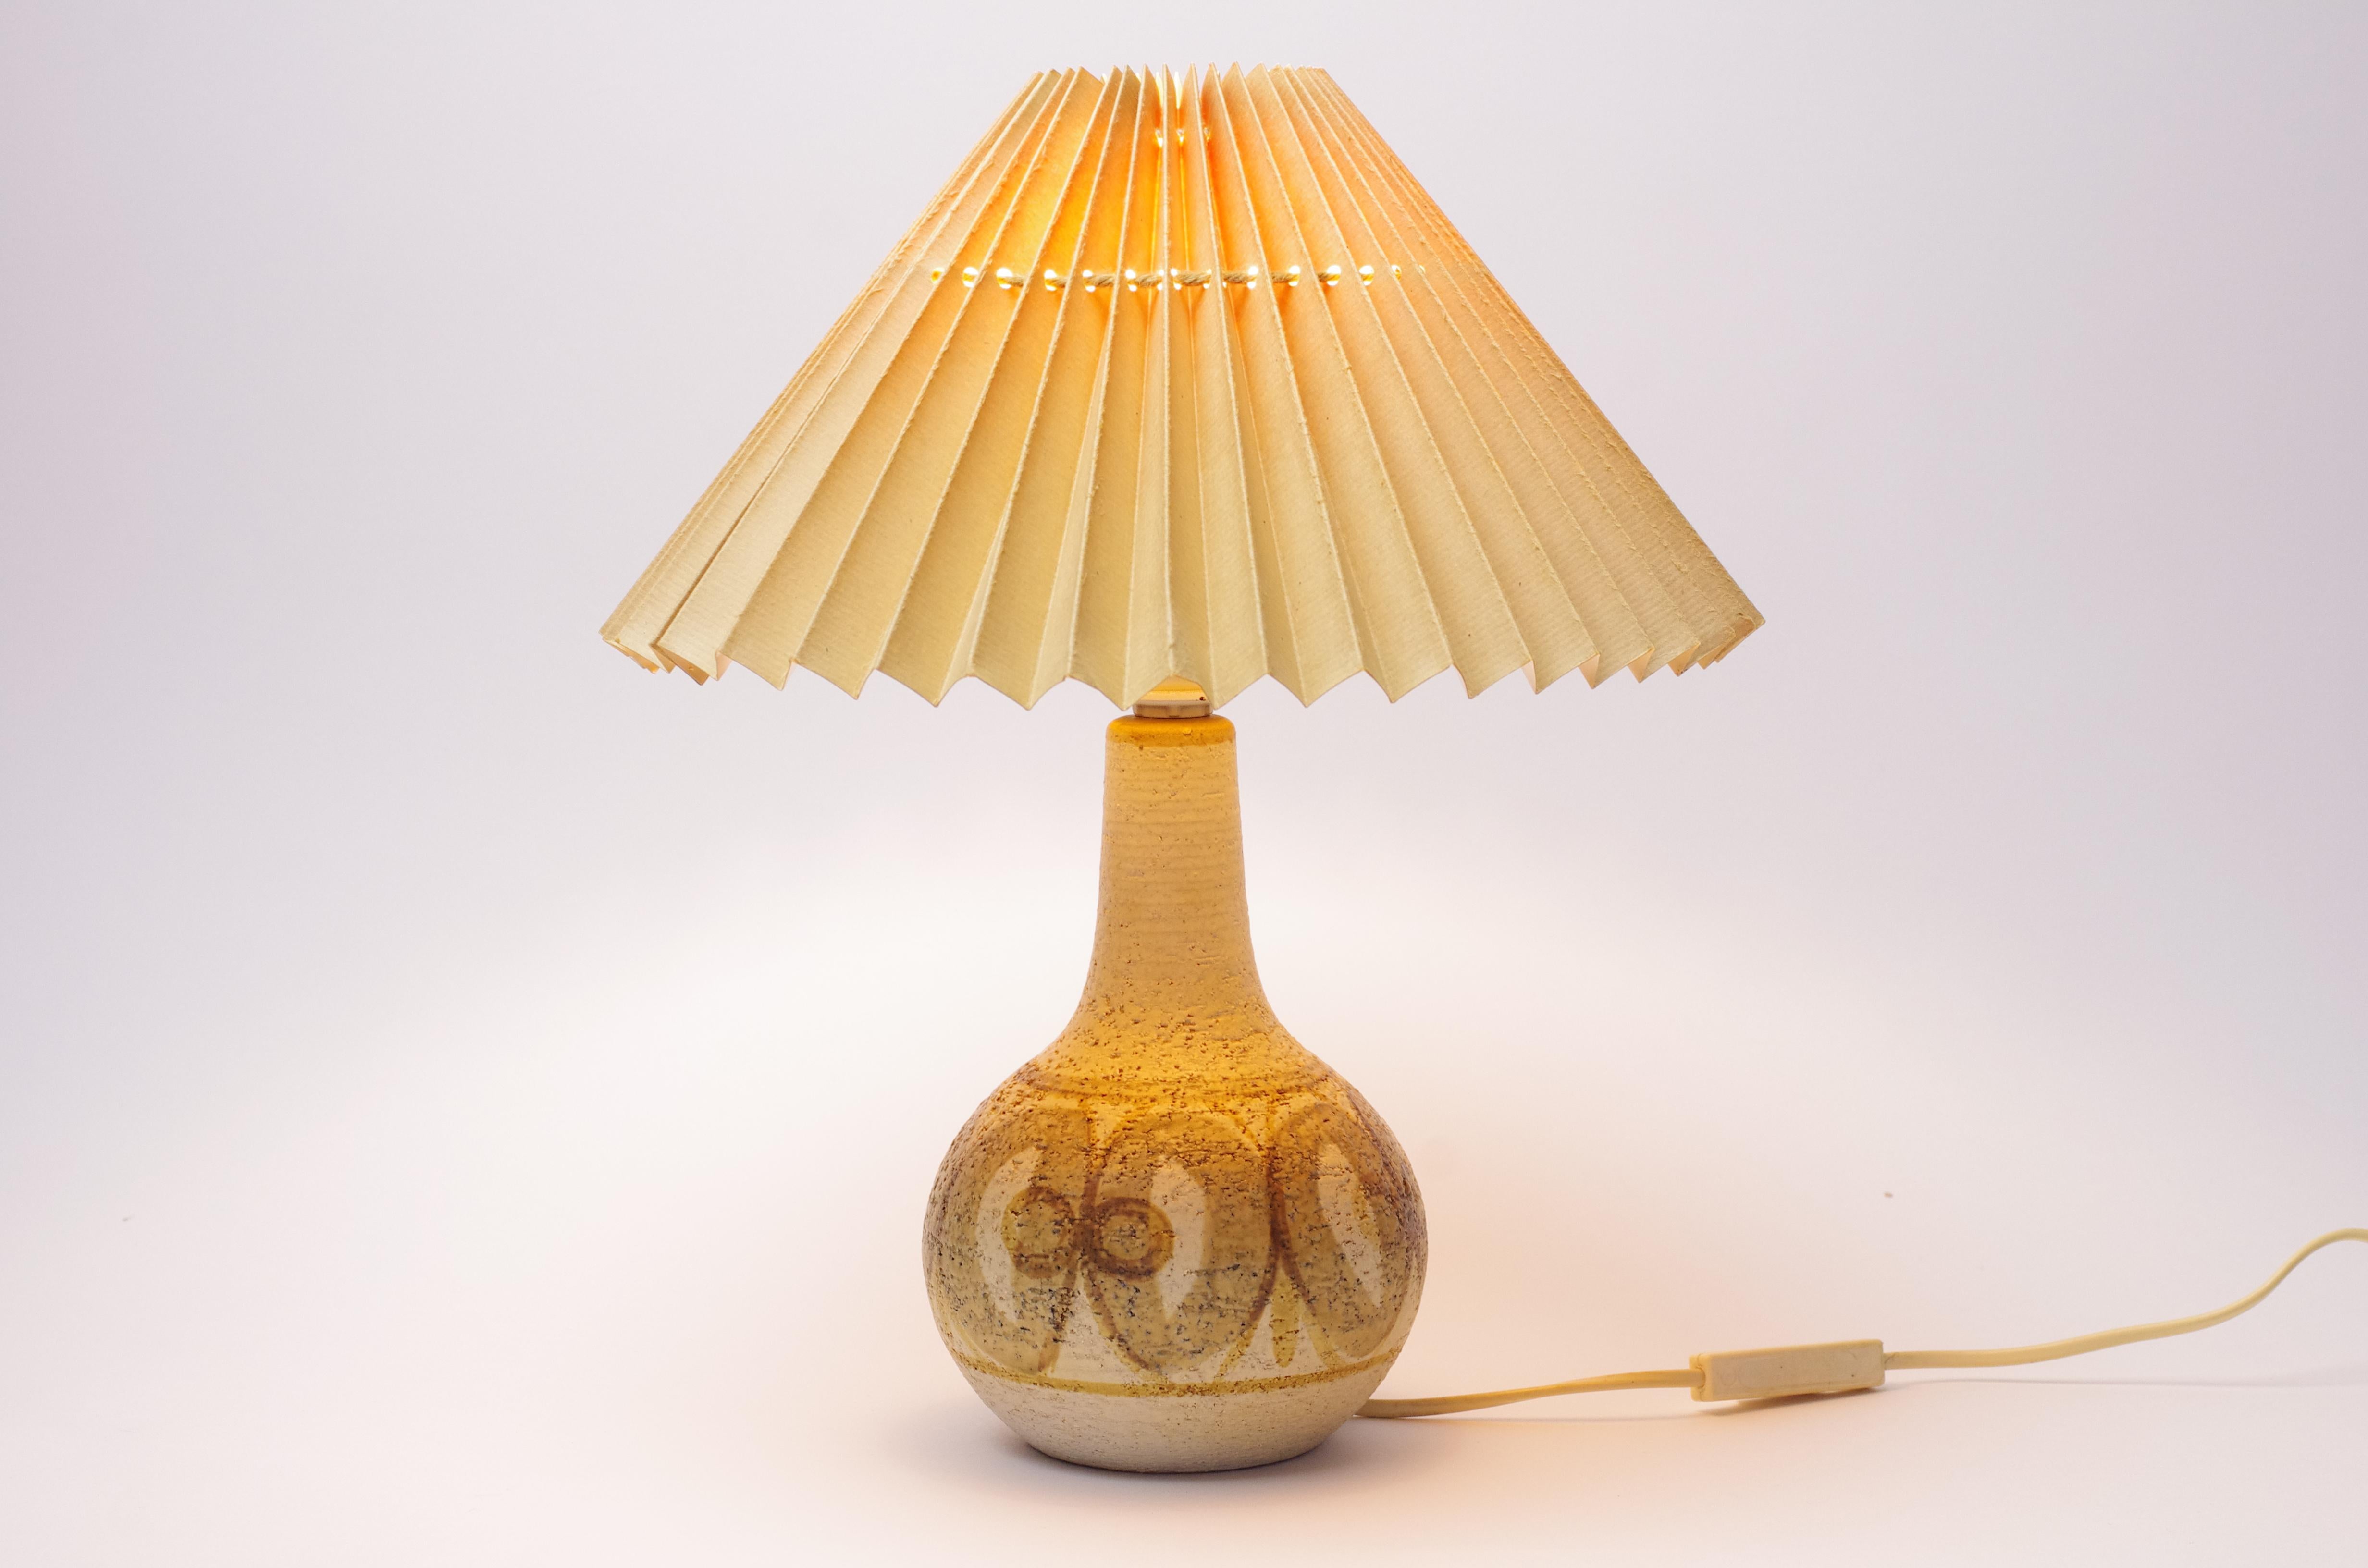 Beschreibung des Produkts:
Diese Leuchte wurde von Noomi Backhausen für die dänische Firma Søholm entworfen. Noomi Backhausen, die 1985 und 1993 einen dänischen bzw. schwedischen Designpreis erhielt, entwarf vor allem Wandteller, Vasen und Lampen.